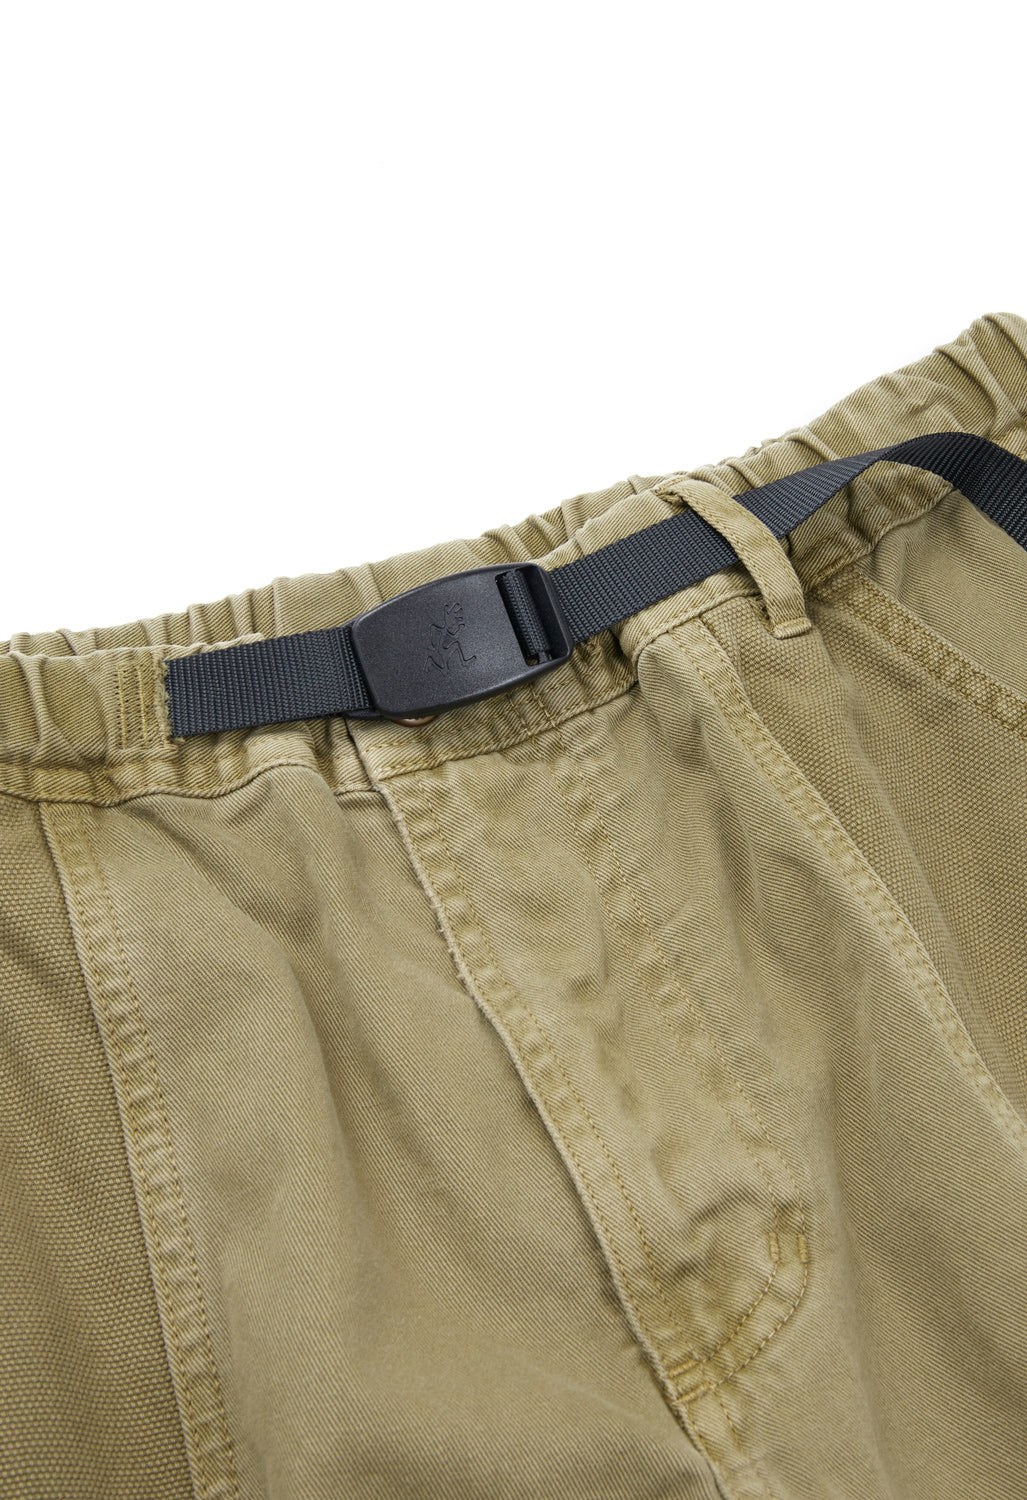 Gramicci Men's Gadget Shorts - Moss